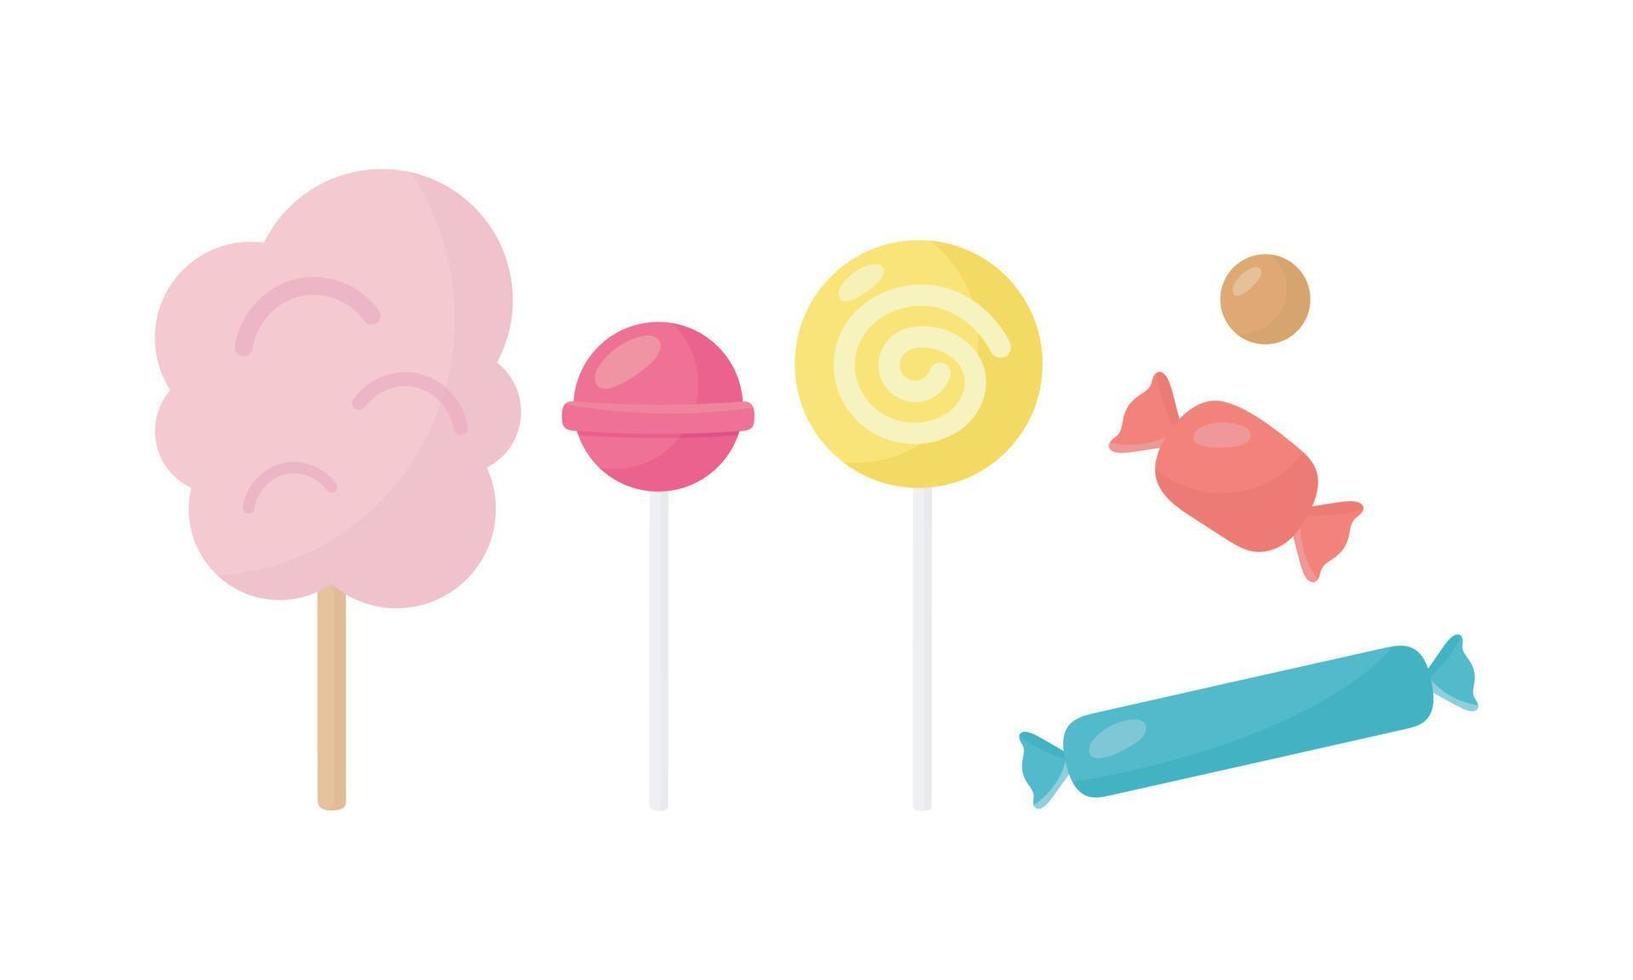 conjunto de dulces algodón de azúcar, piruleta, caramelo de chocolate, caramelo de caramelo. ilustración vectorial en estilo de dibujos animados. vector